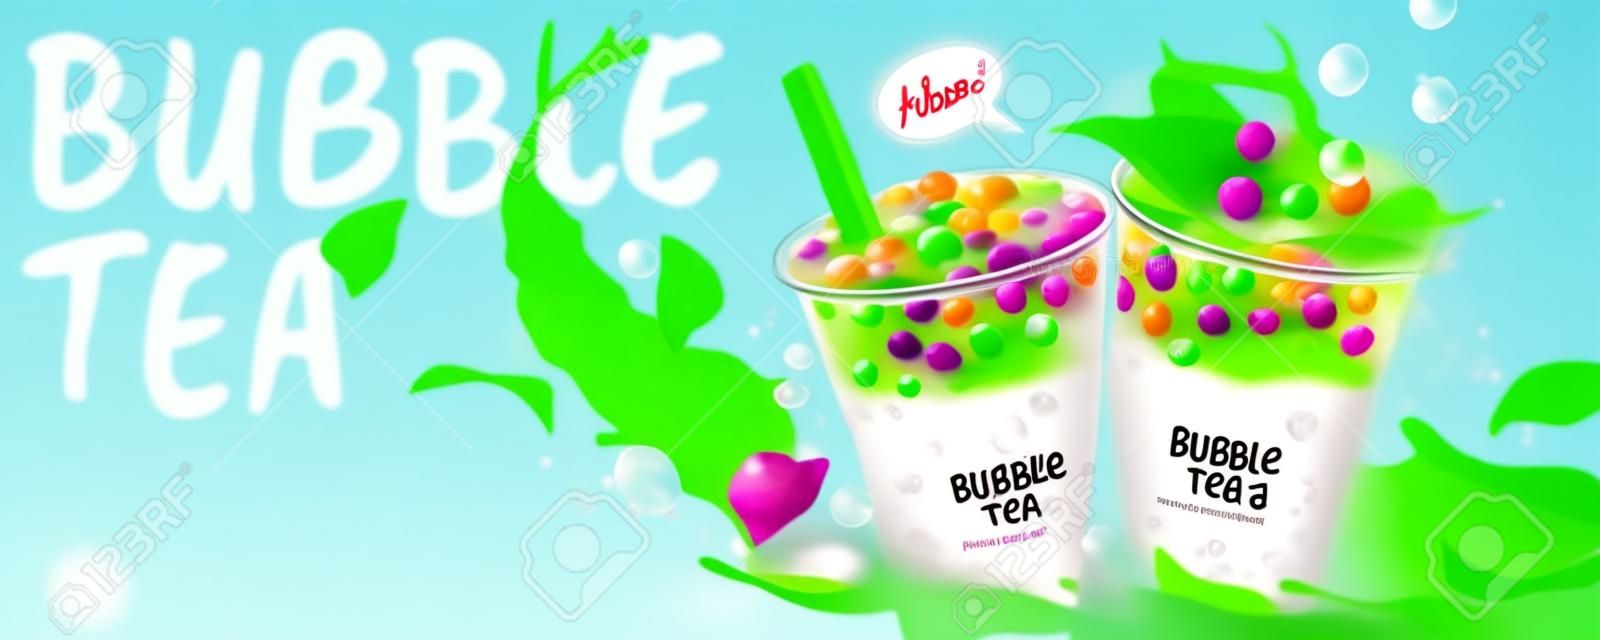 Bubble Tea Bannerwerbung mit spritzender Milch und grünen Blättern, 3D-Darstellung